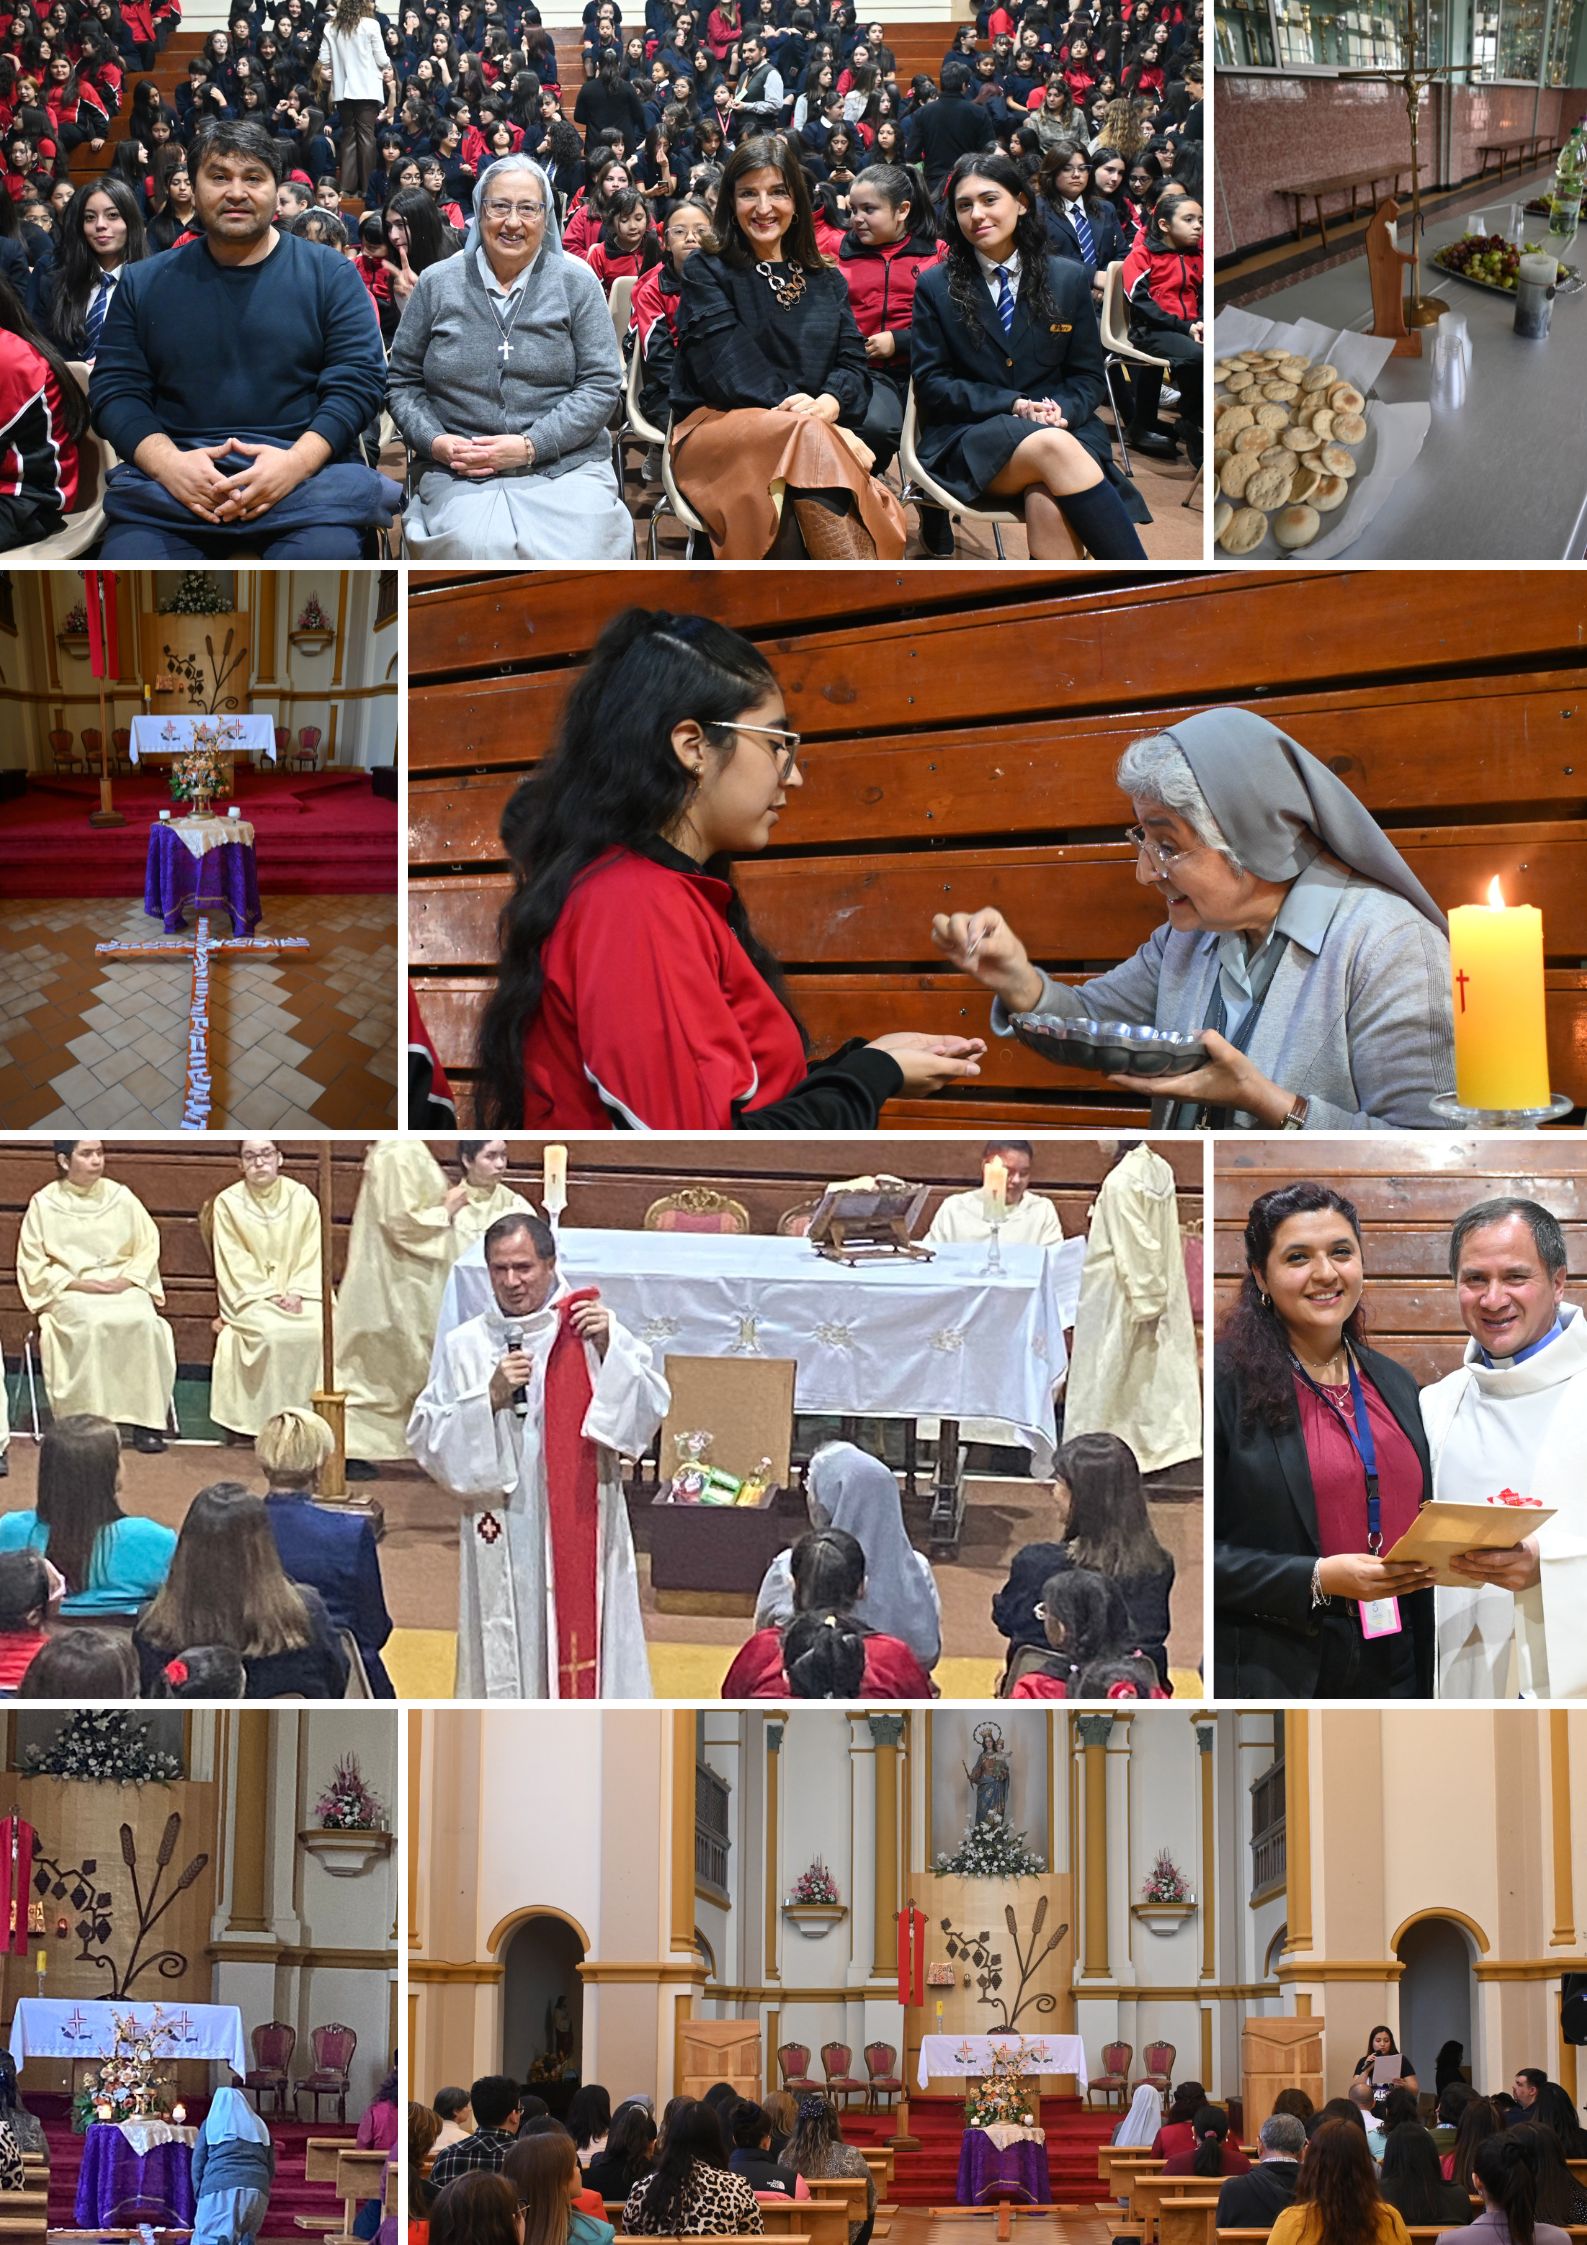 Eucaristía Jueves Santo: Día del amor Comunitario y Fraterno